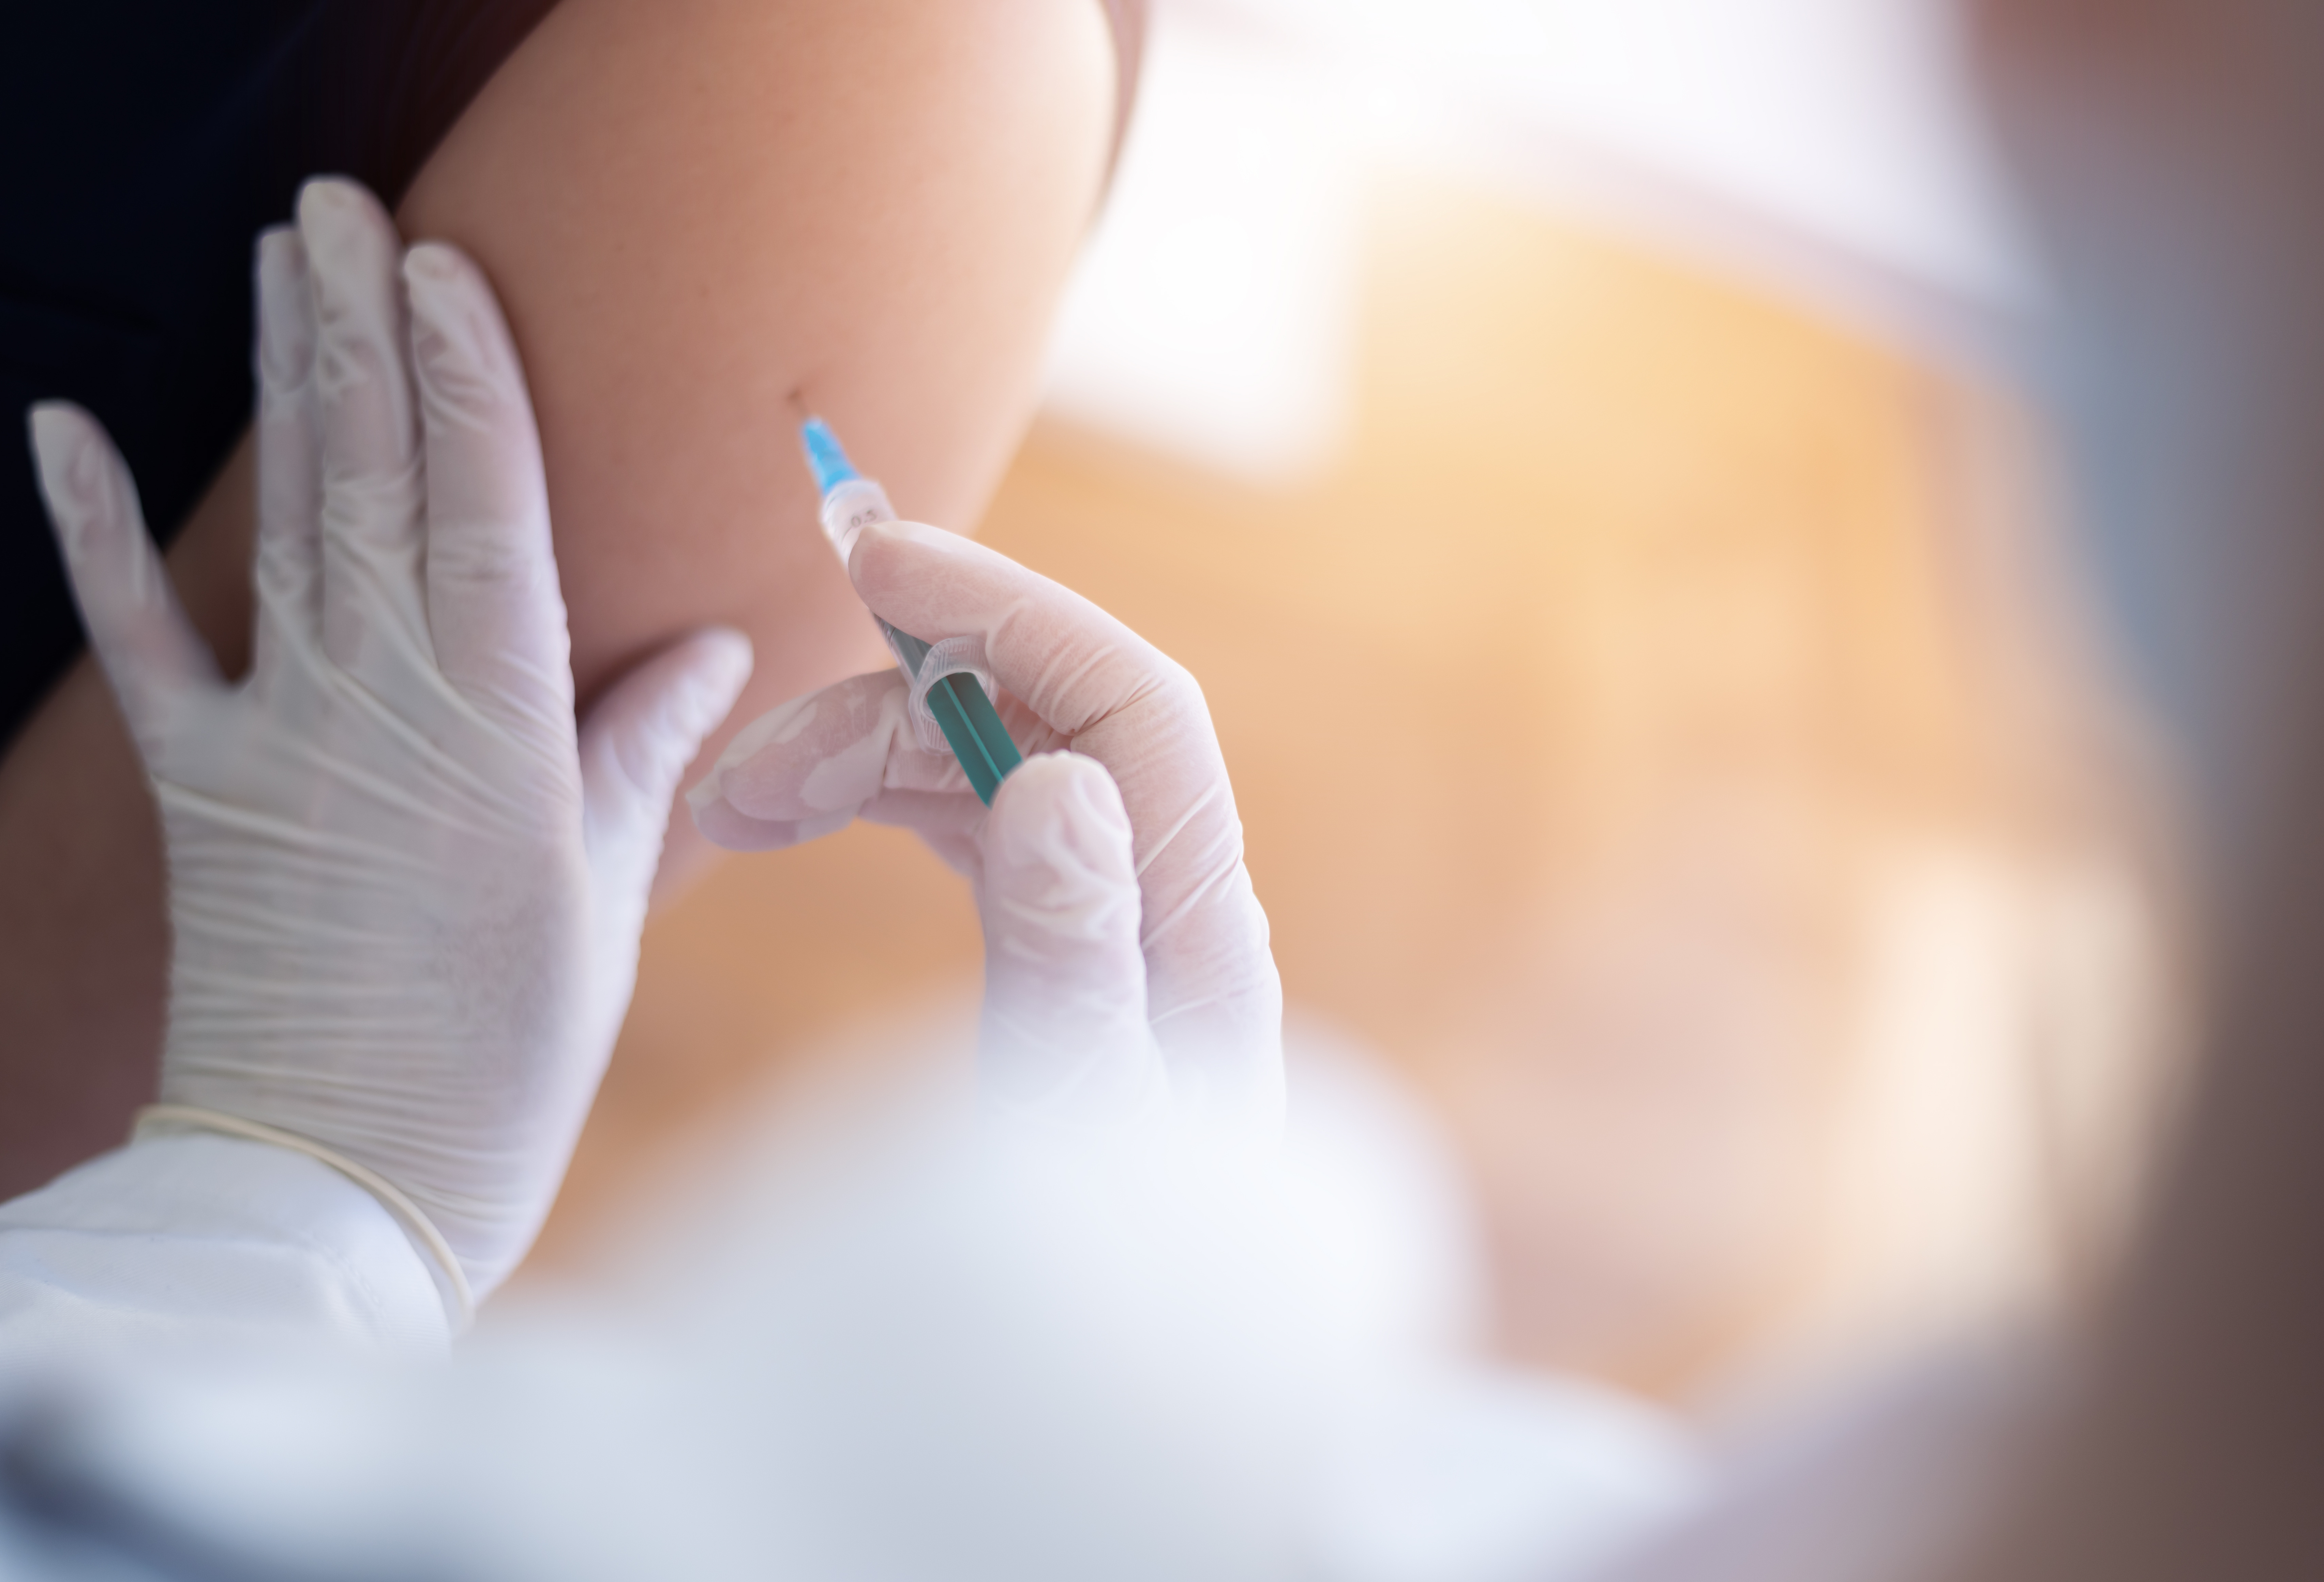 Chikungunya : Valneva débute la soumission progressive du dossier de demande d’AMM auprès de la FDA pour son candidat vaccin à injection unique 